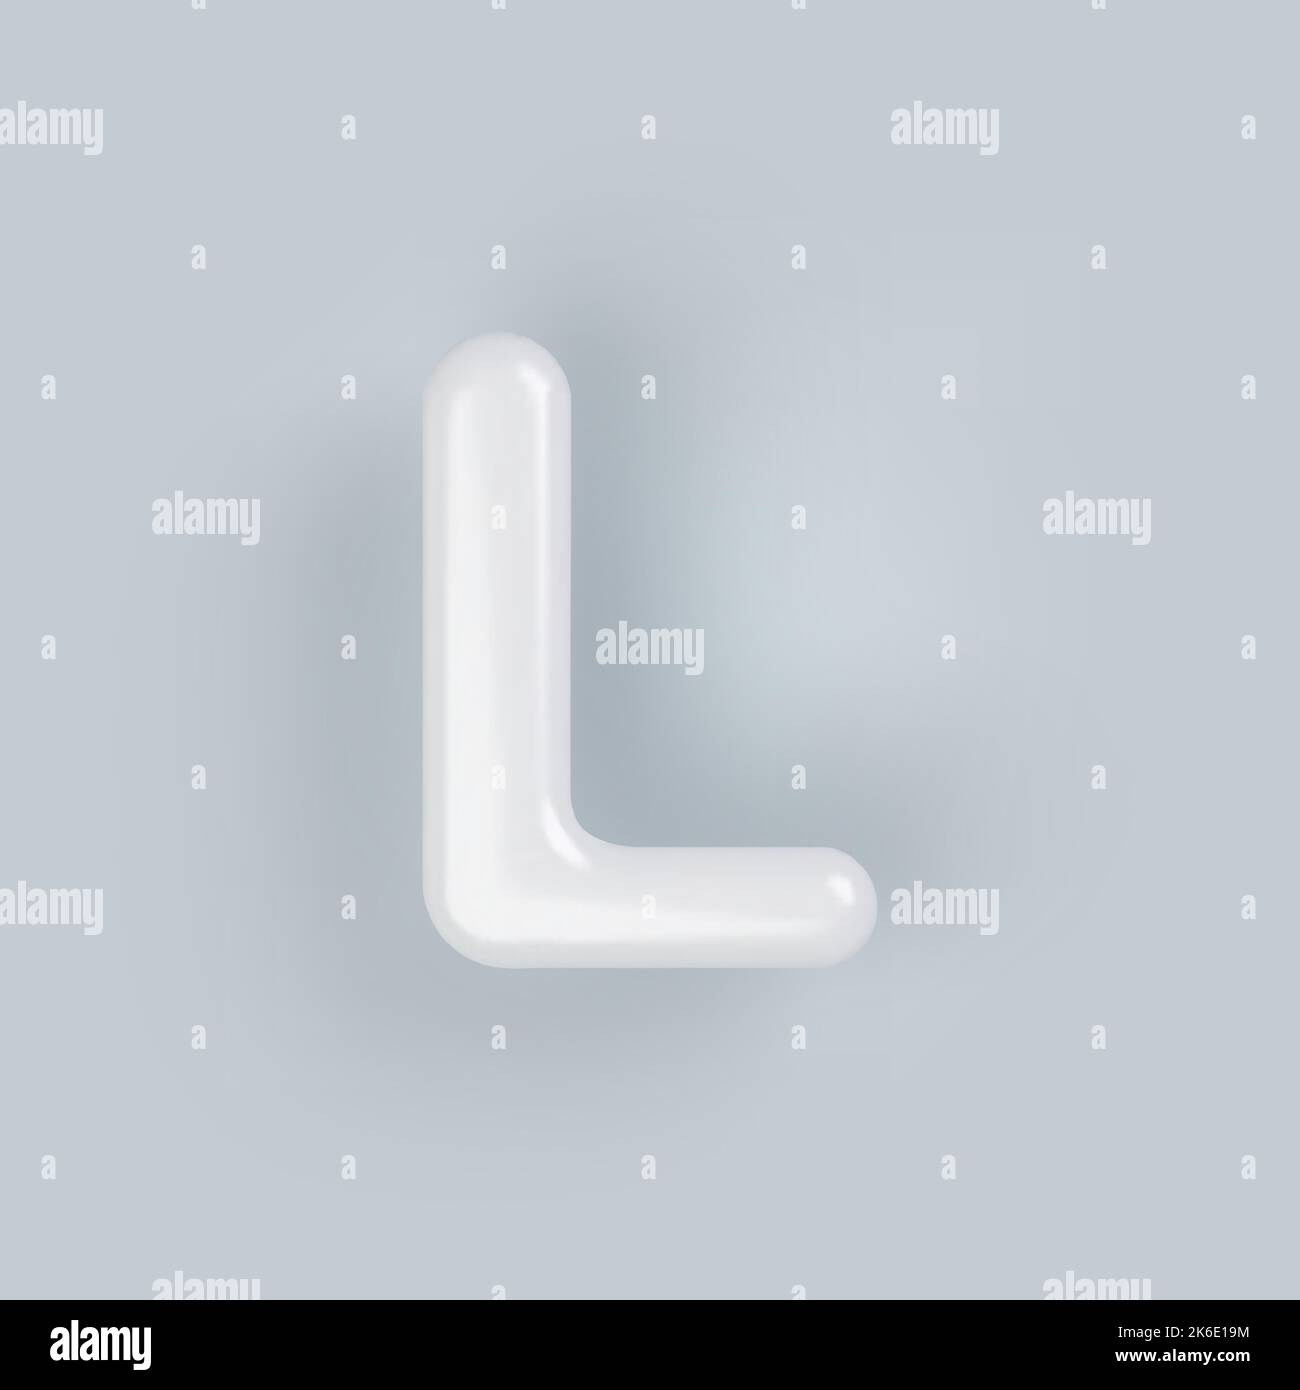 3D lettre L majuscule plastique blanc avec une surface brillante sur fond gris. Illustration de Vecteur